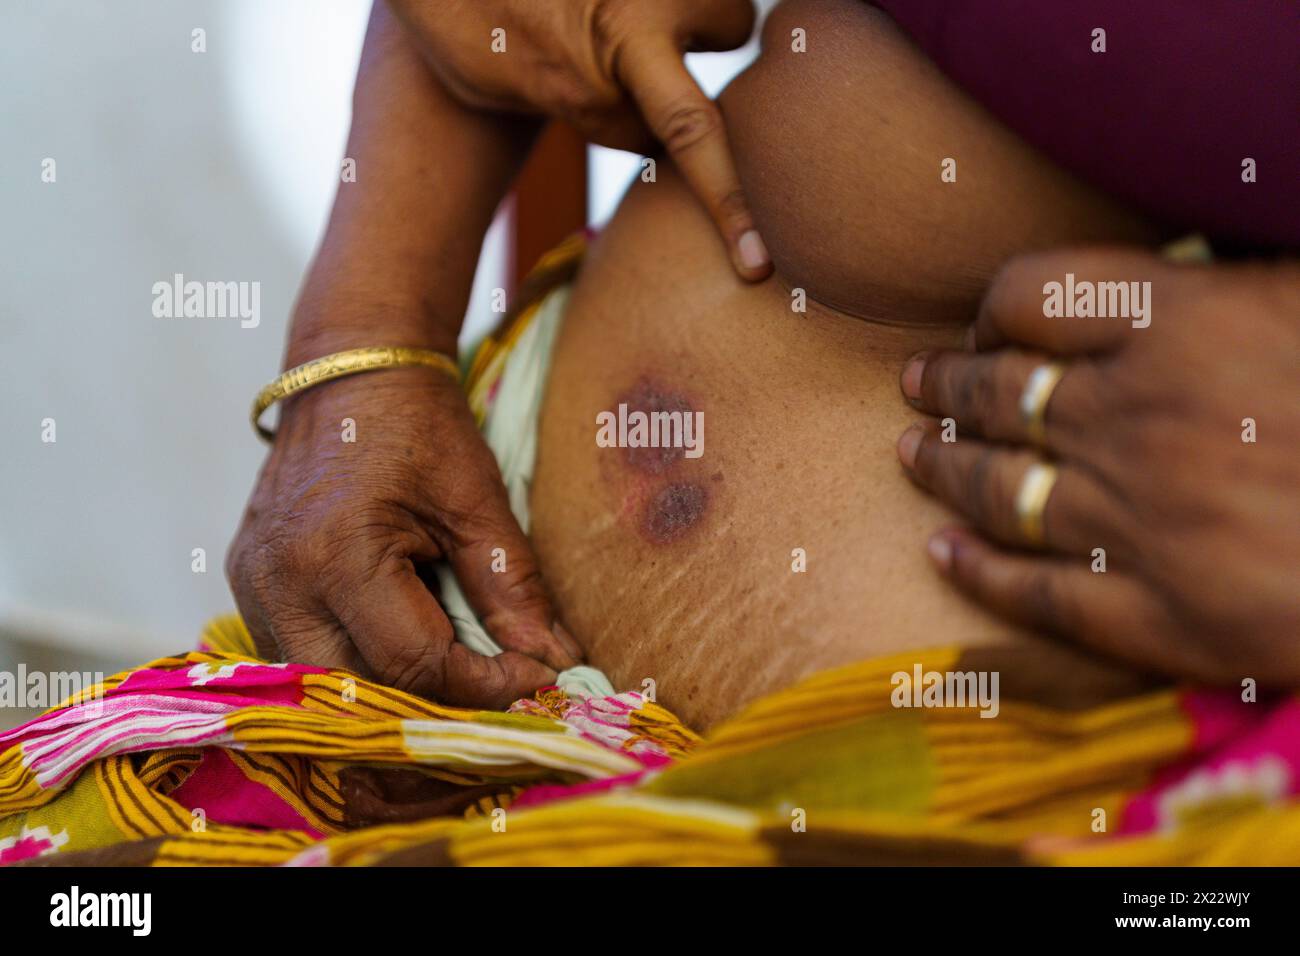 Eine alte indianerin zeigt ein Ekzem auf ihrer Haut unter ihrem Sari in einer Klinik im ländlichen indien. Die Gesundheitsversorgung ist ein wichtiges Thema auf dem indischen Land Stockfoto